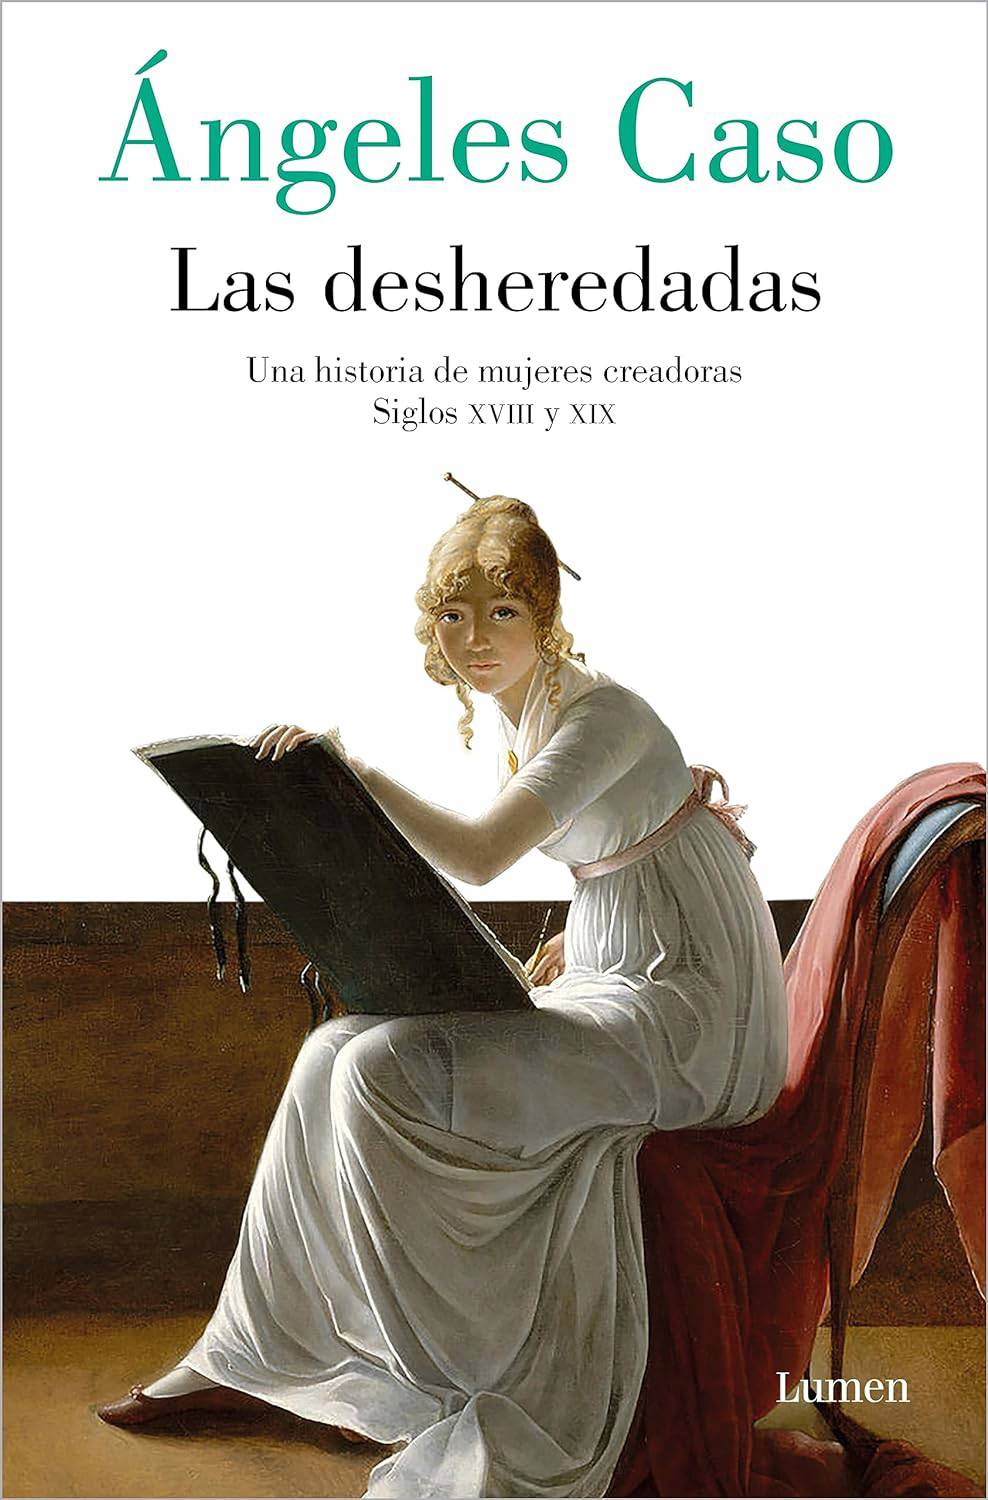 3.	Las desheredadas: una historia de mujeres creadoras (Siglos XVIII y XIX) (Ángeles Caso)